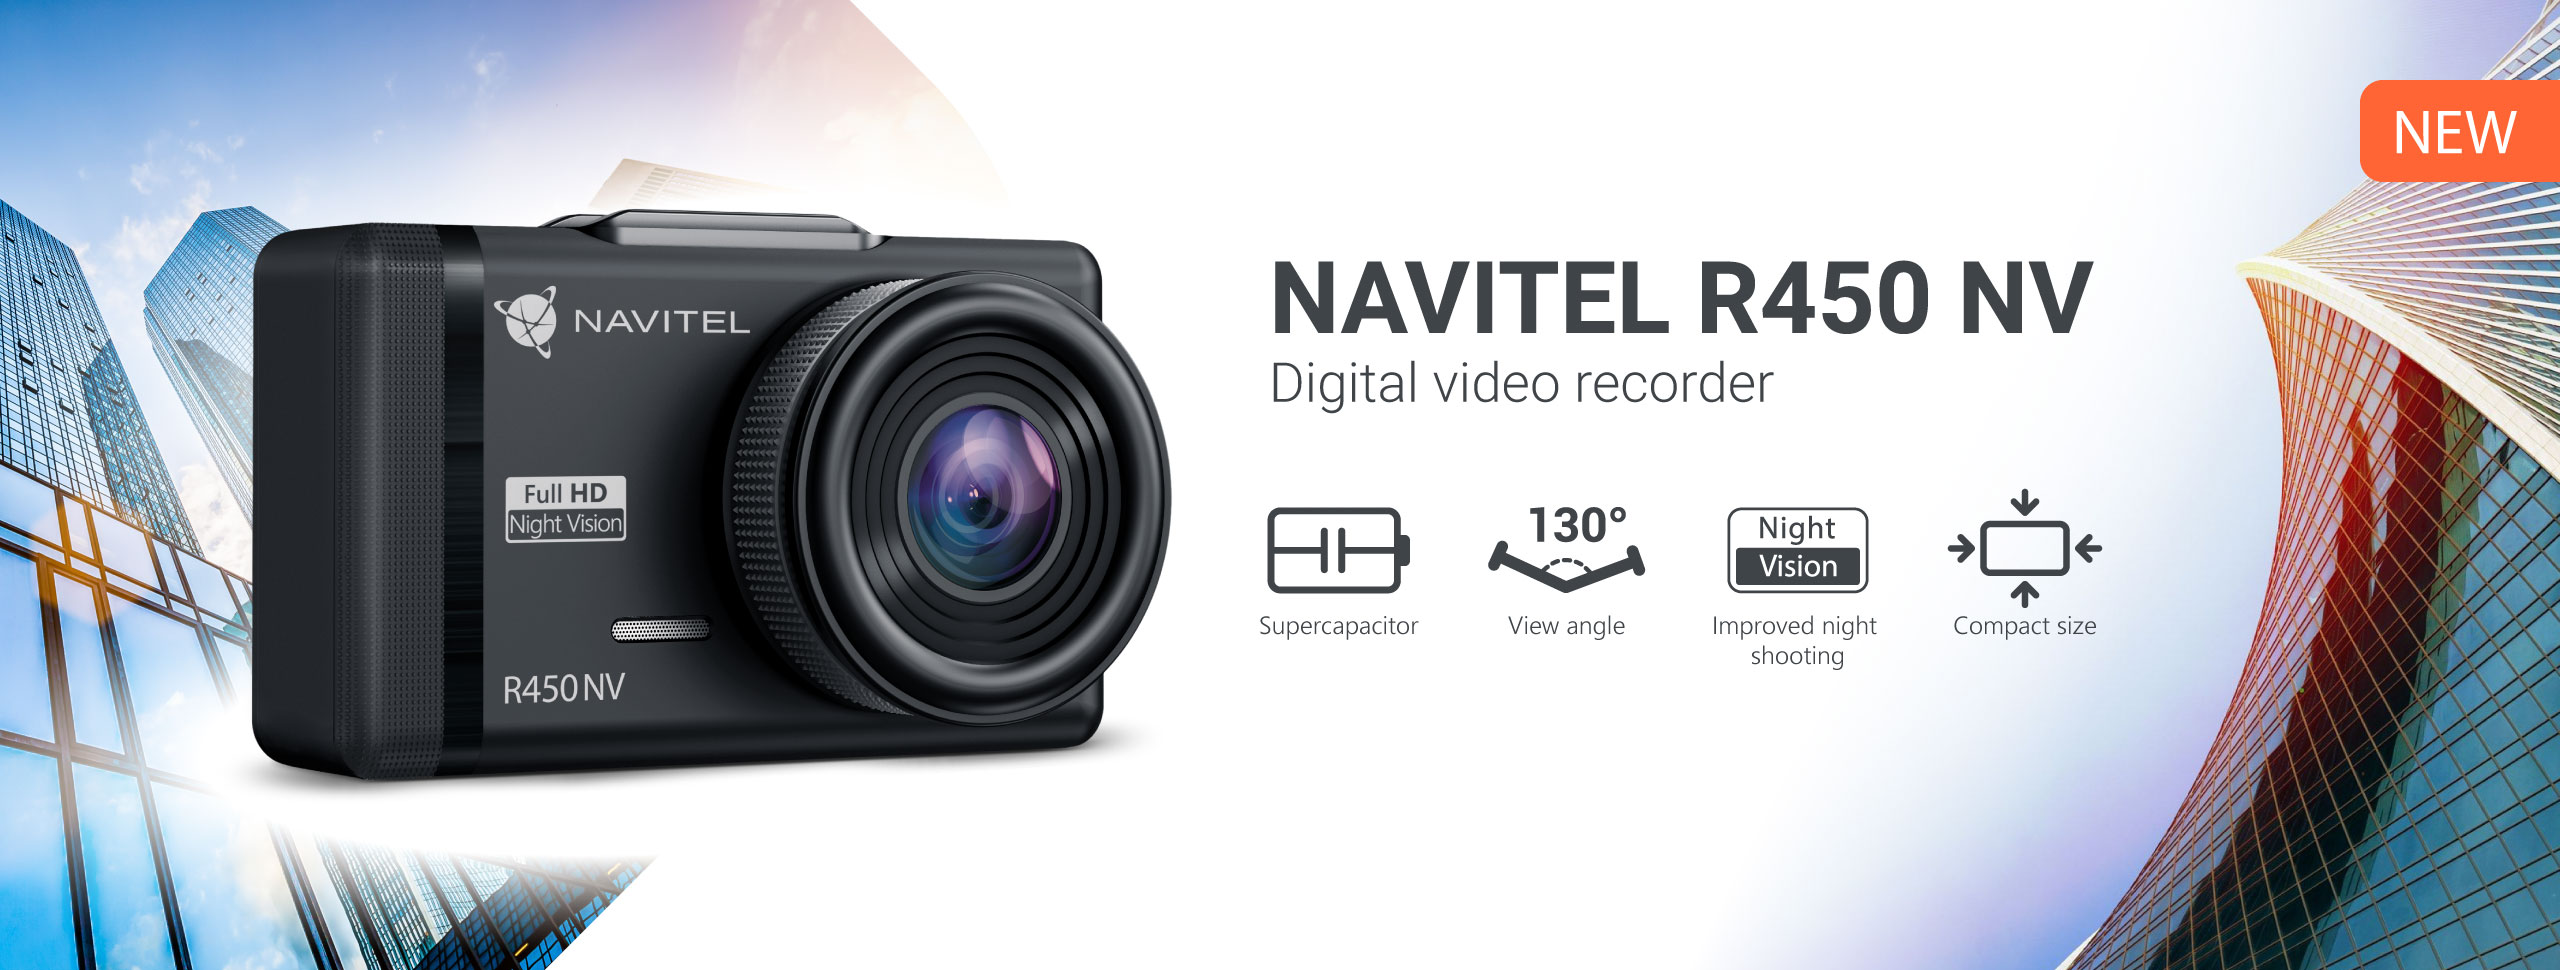 NAVITEL® has released a new dashcam NAVITEL R450 NV